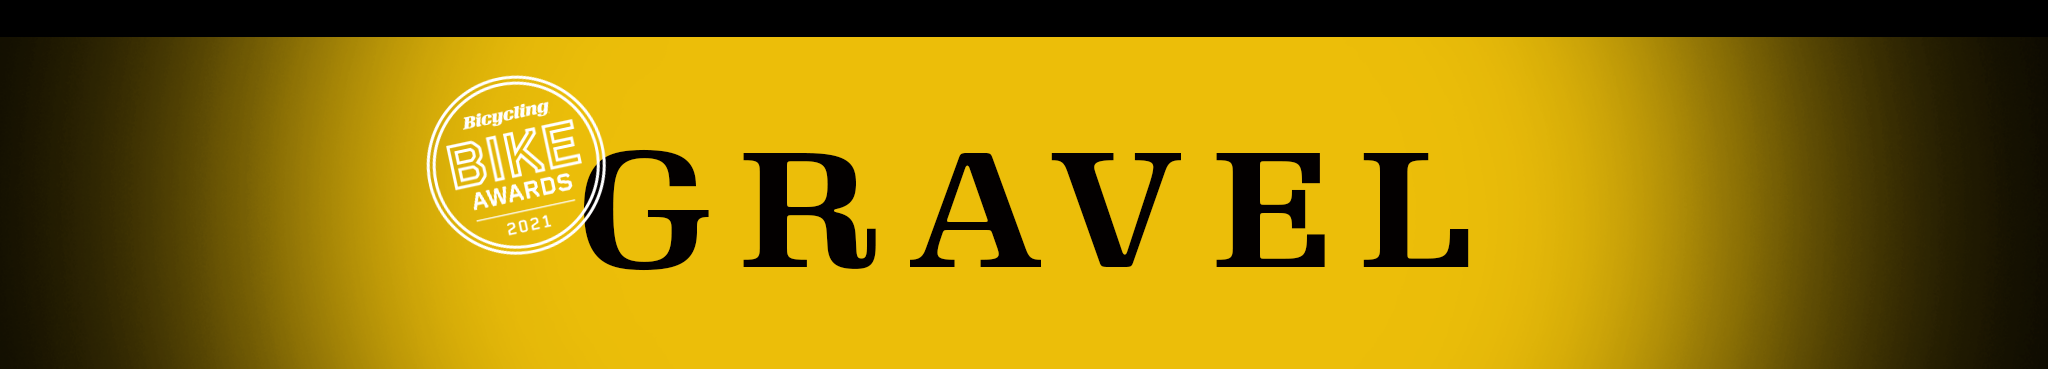 gravel category